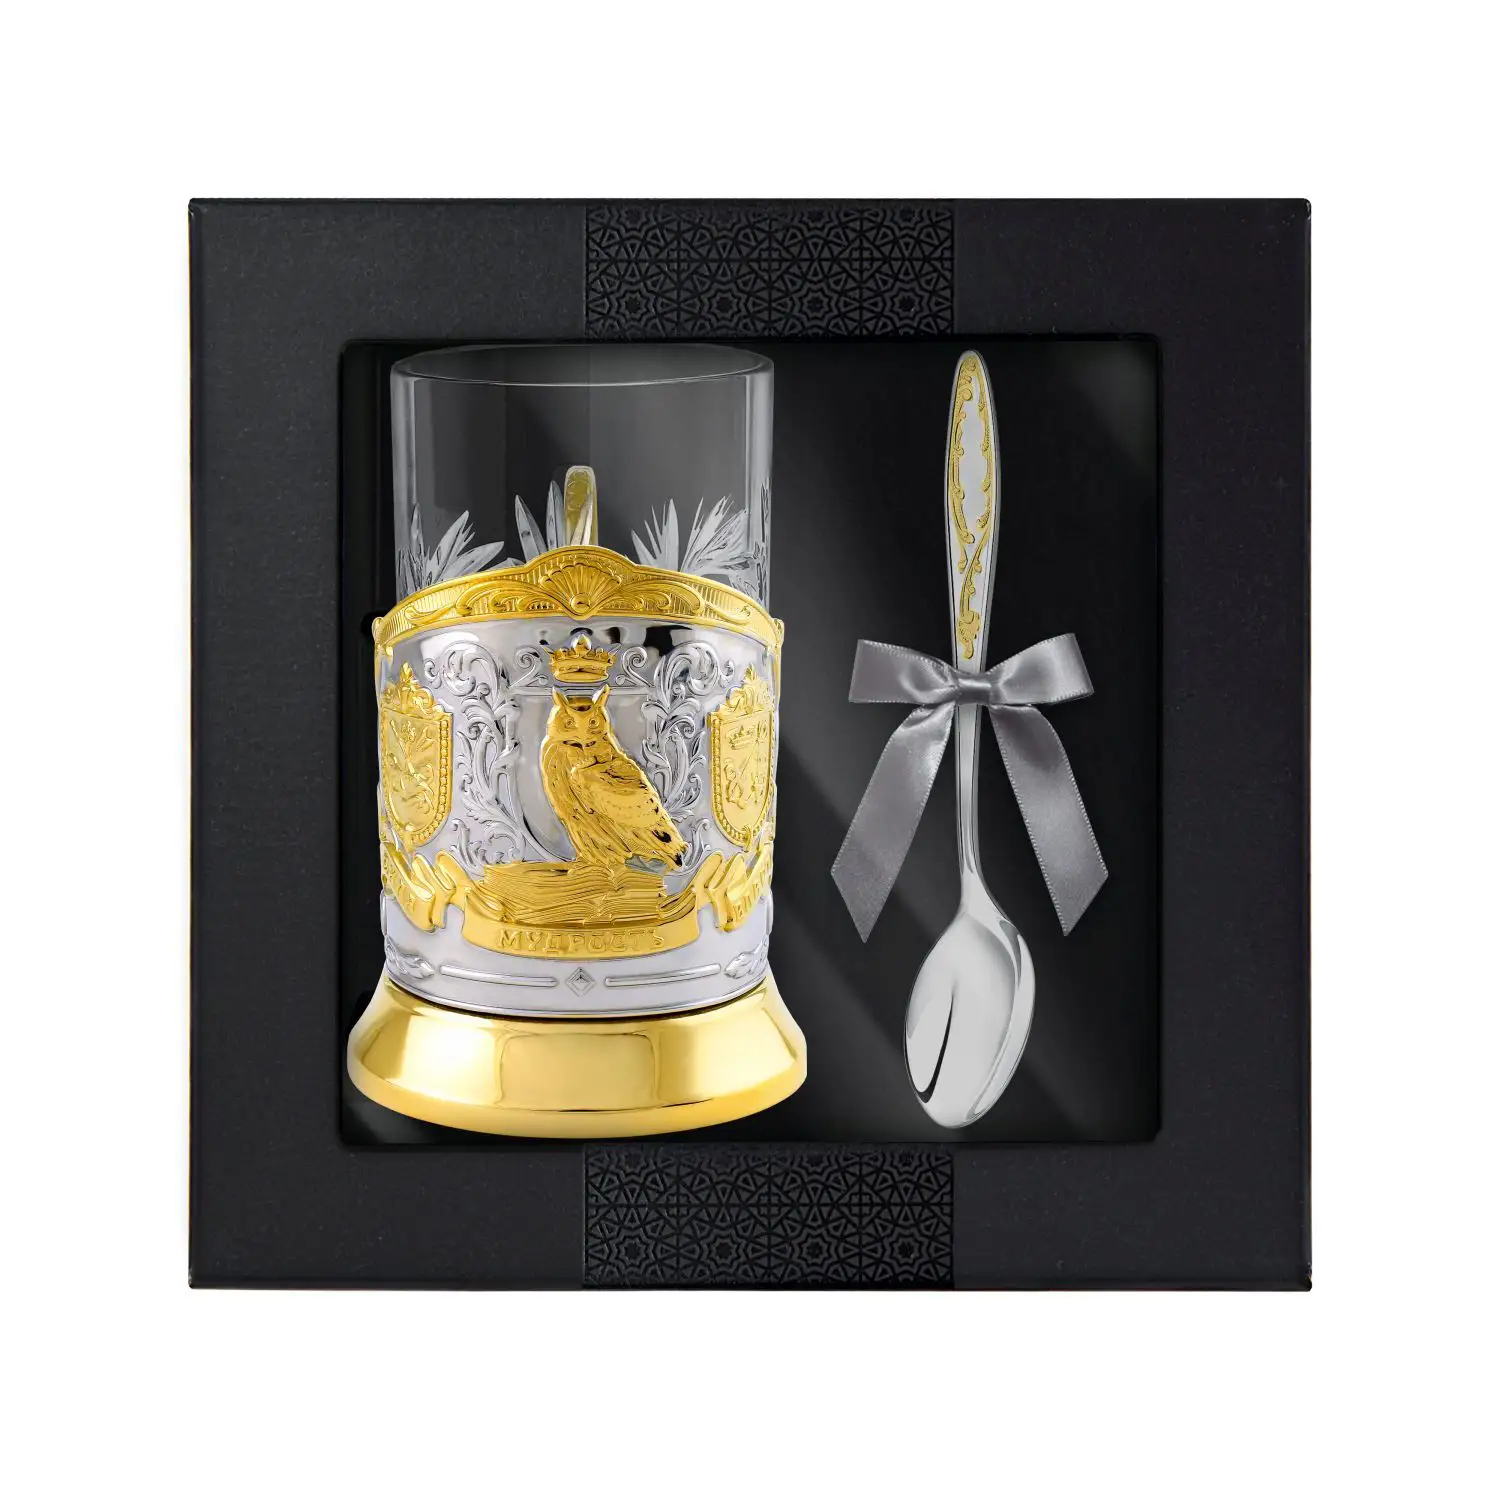 Набор для чая Мудрый руководитель: ложка, подстаканник, стакан никелированный с позолотой